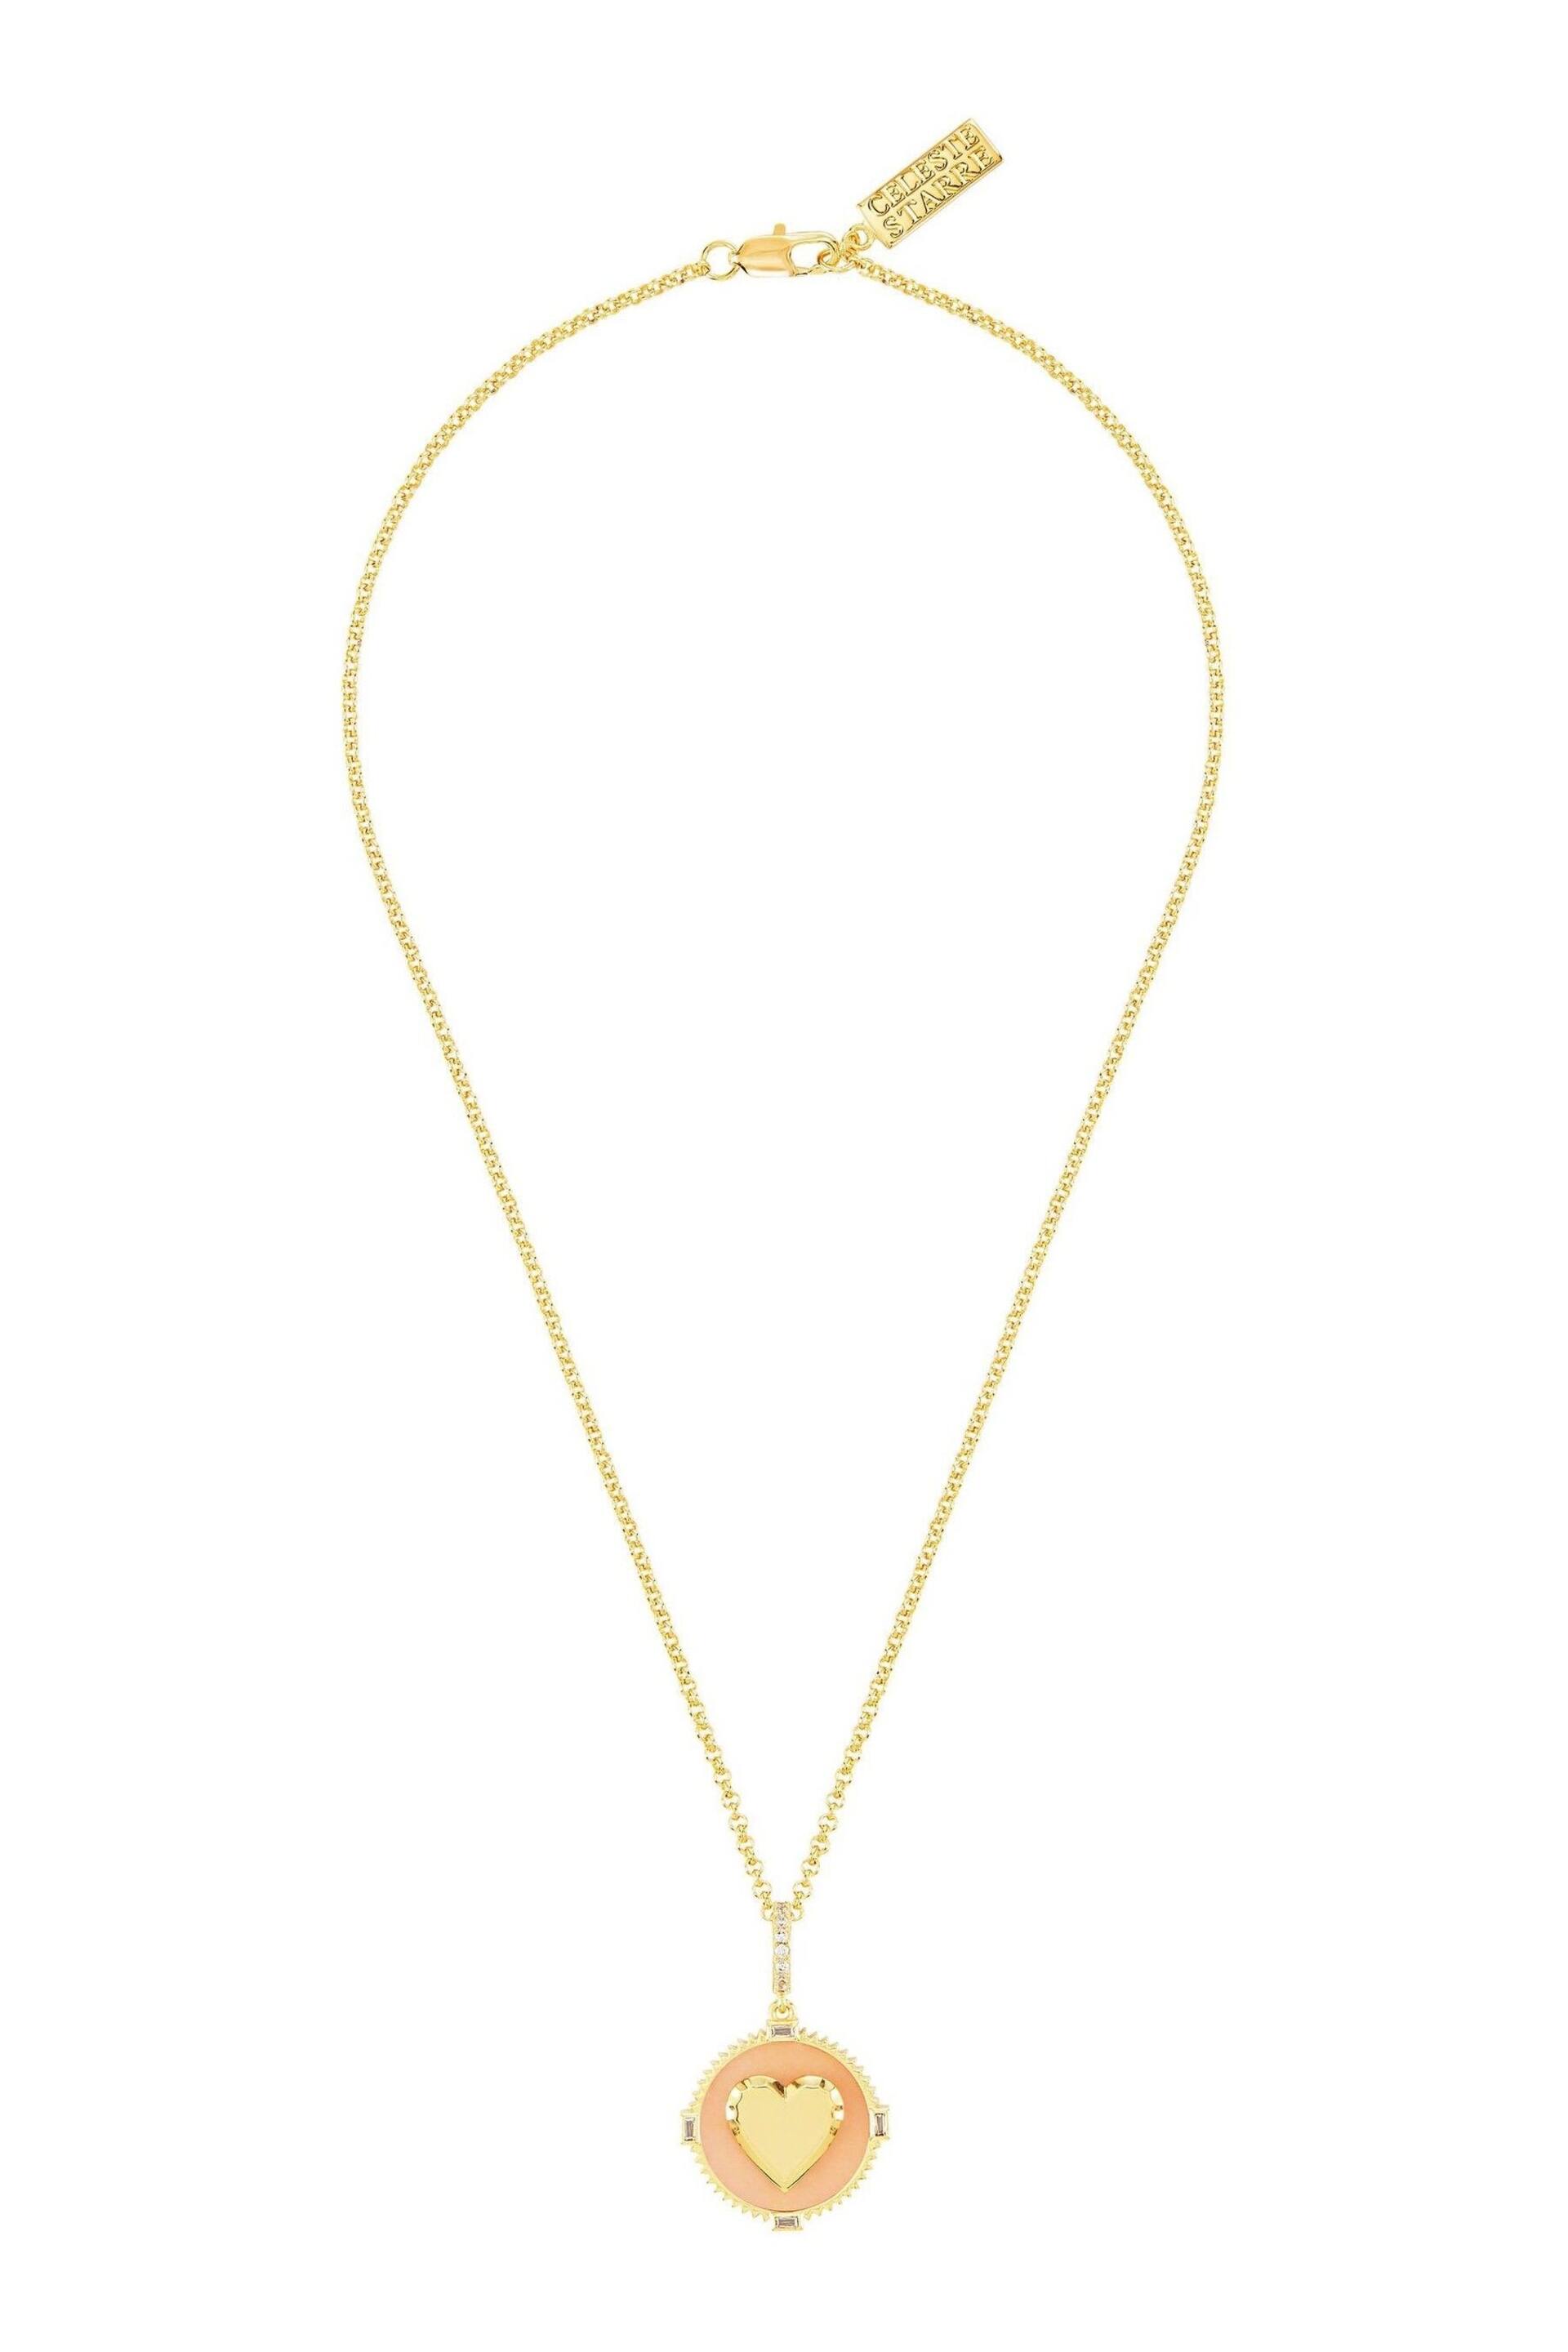 Celeste Starre Gold Tone I Am Loved Necklace - Image 1 of 5